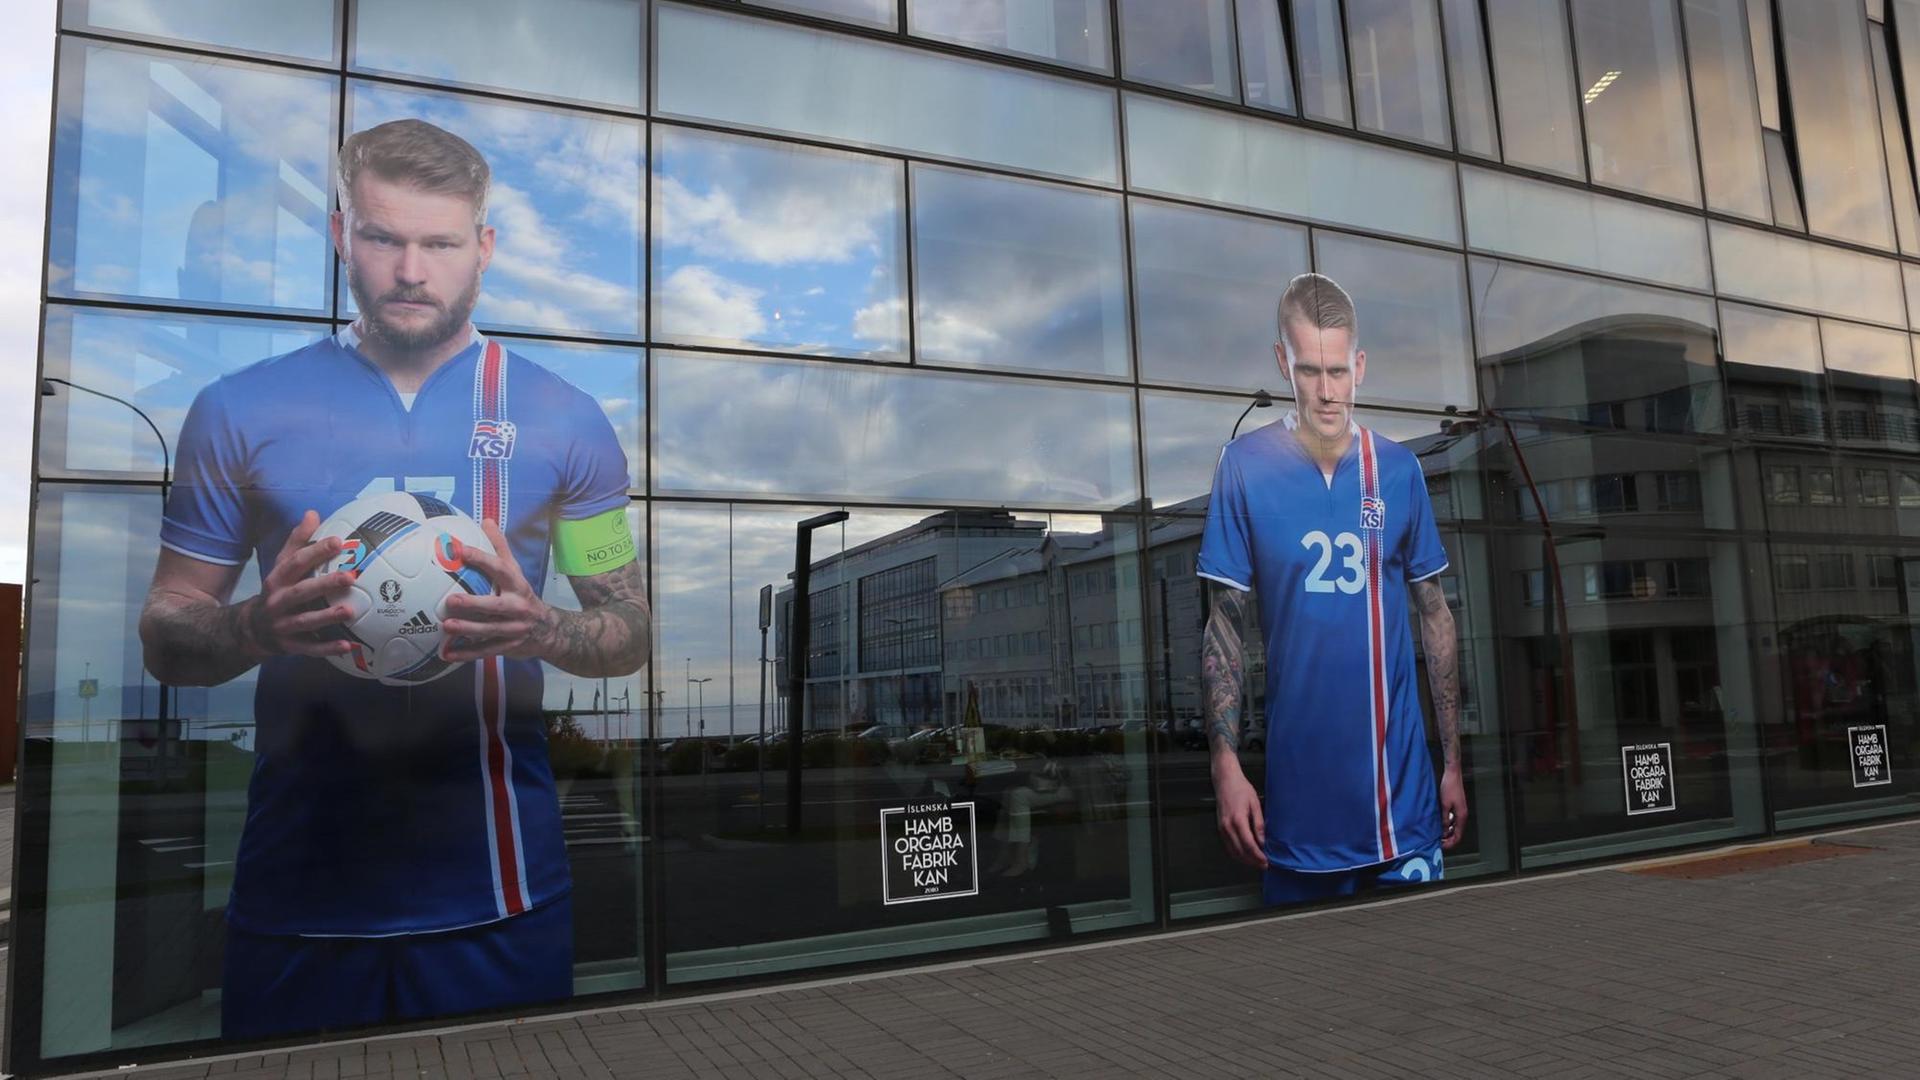 Die überlebensgroßen Bilder der isländischen Nationalmannschaft auf den Fenstern eines populären Restaurants.